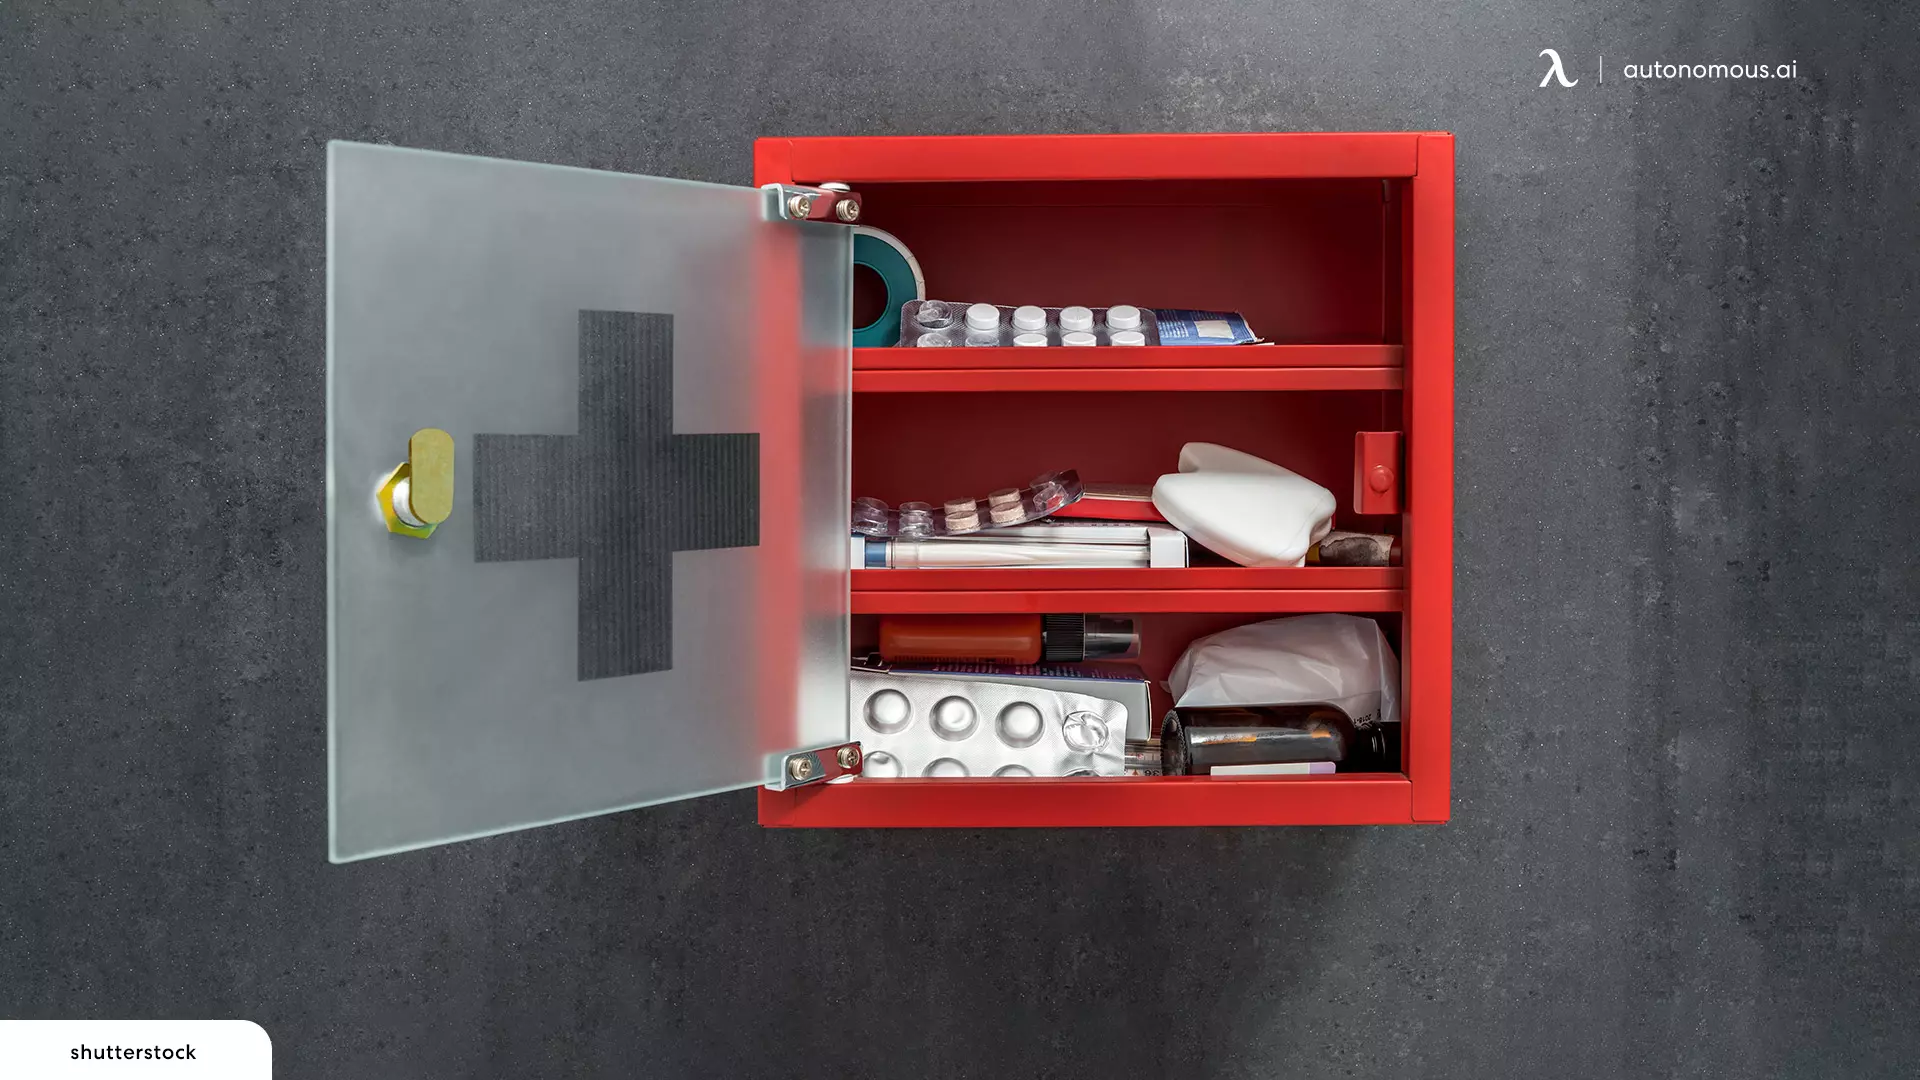 Medicine Cabinet - adu appliances